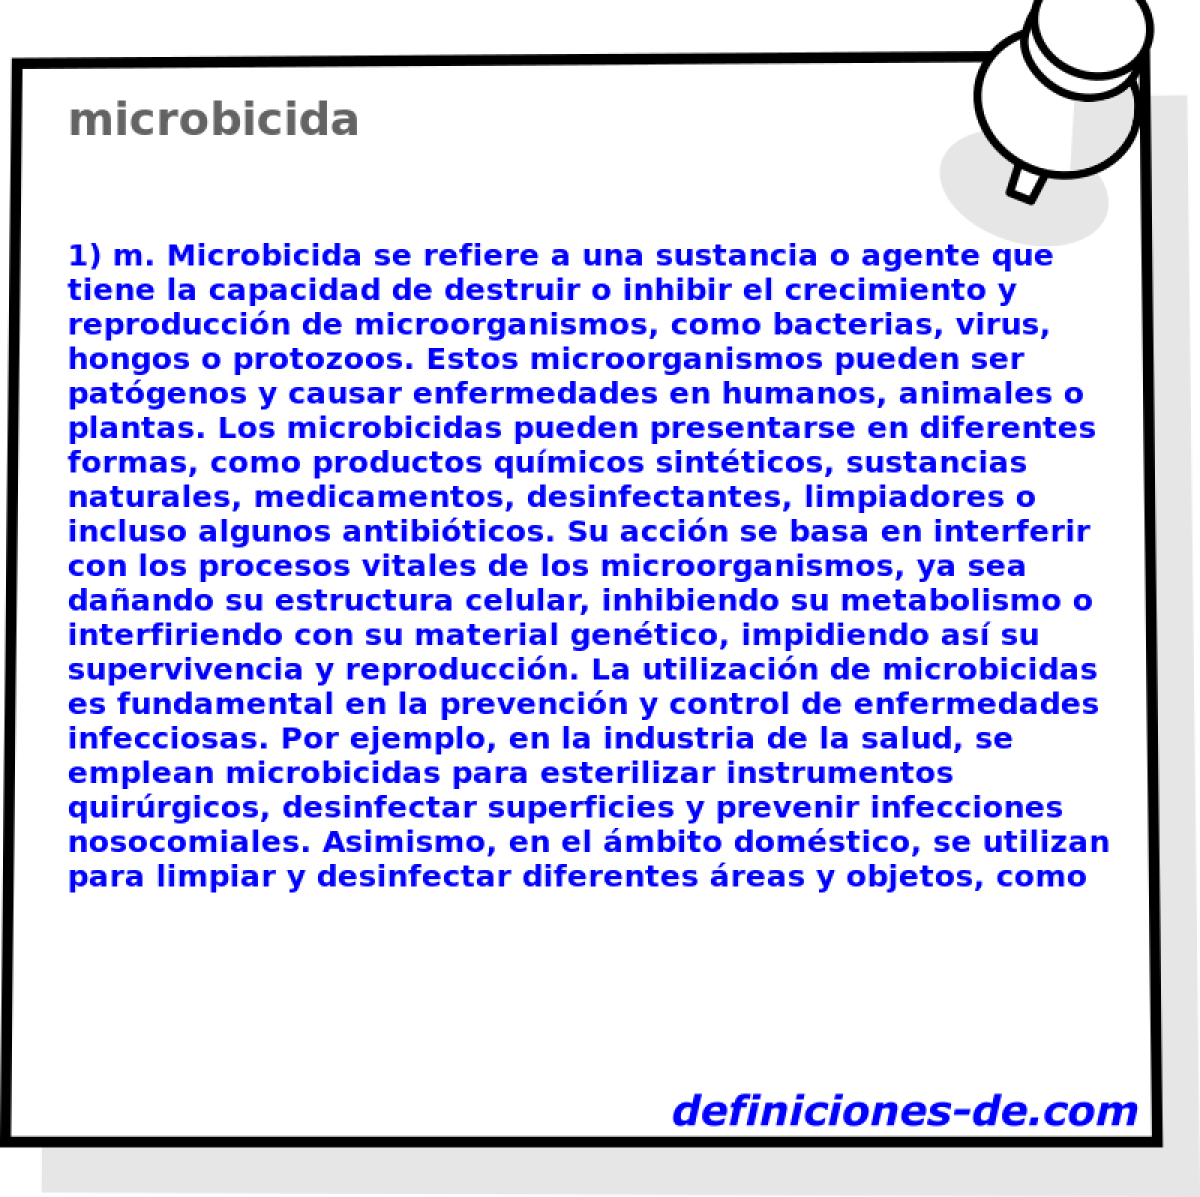 microbicida 